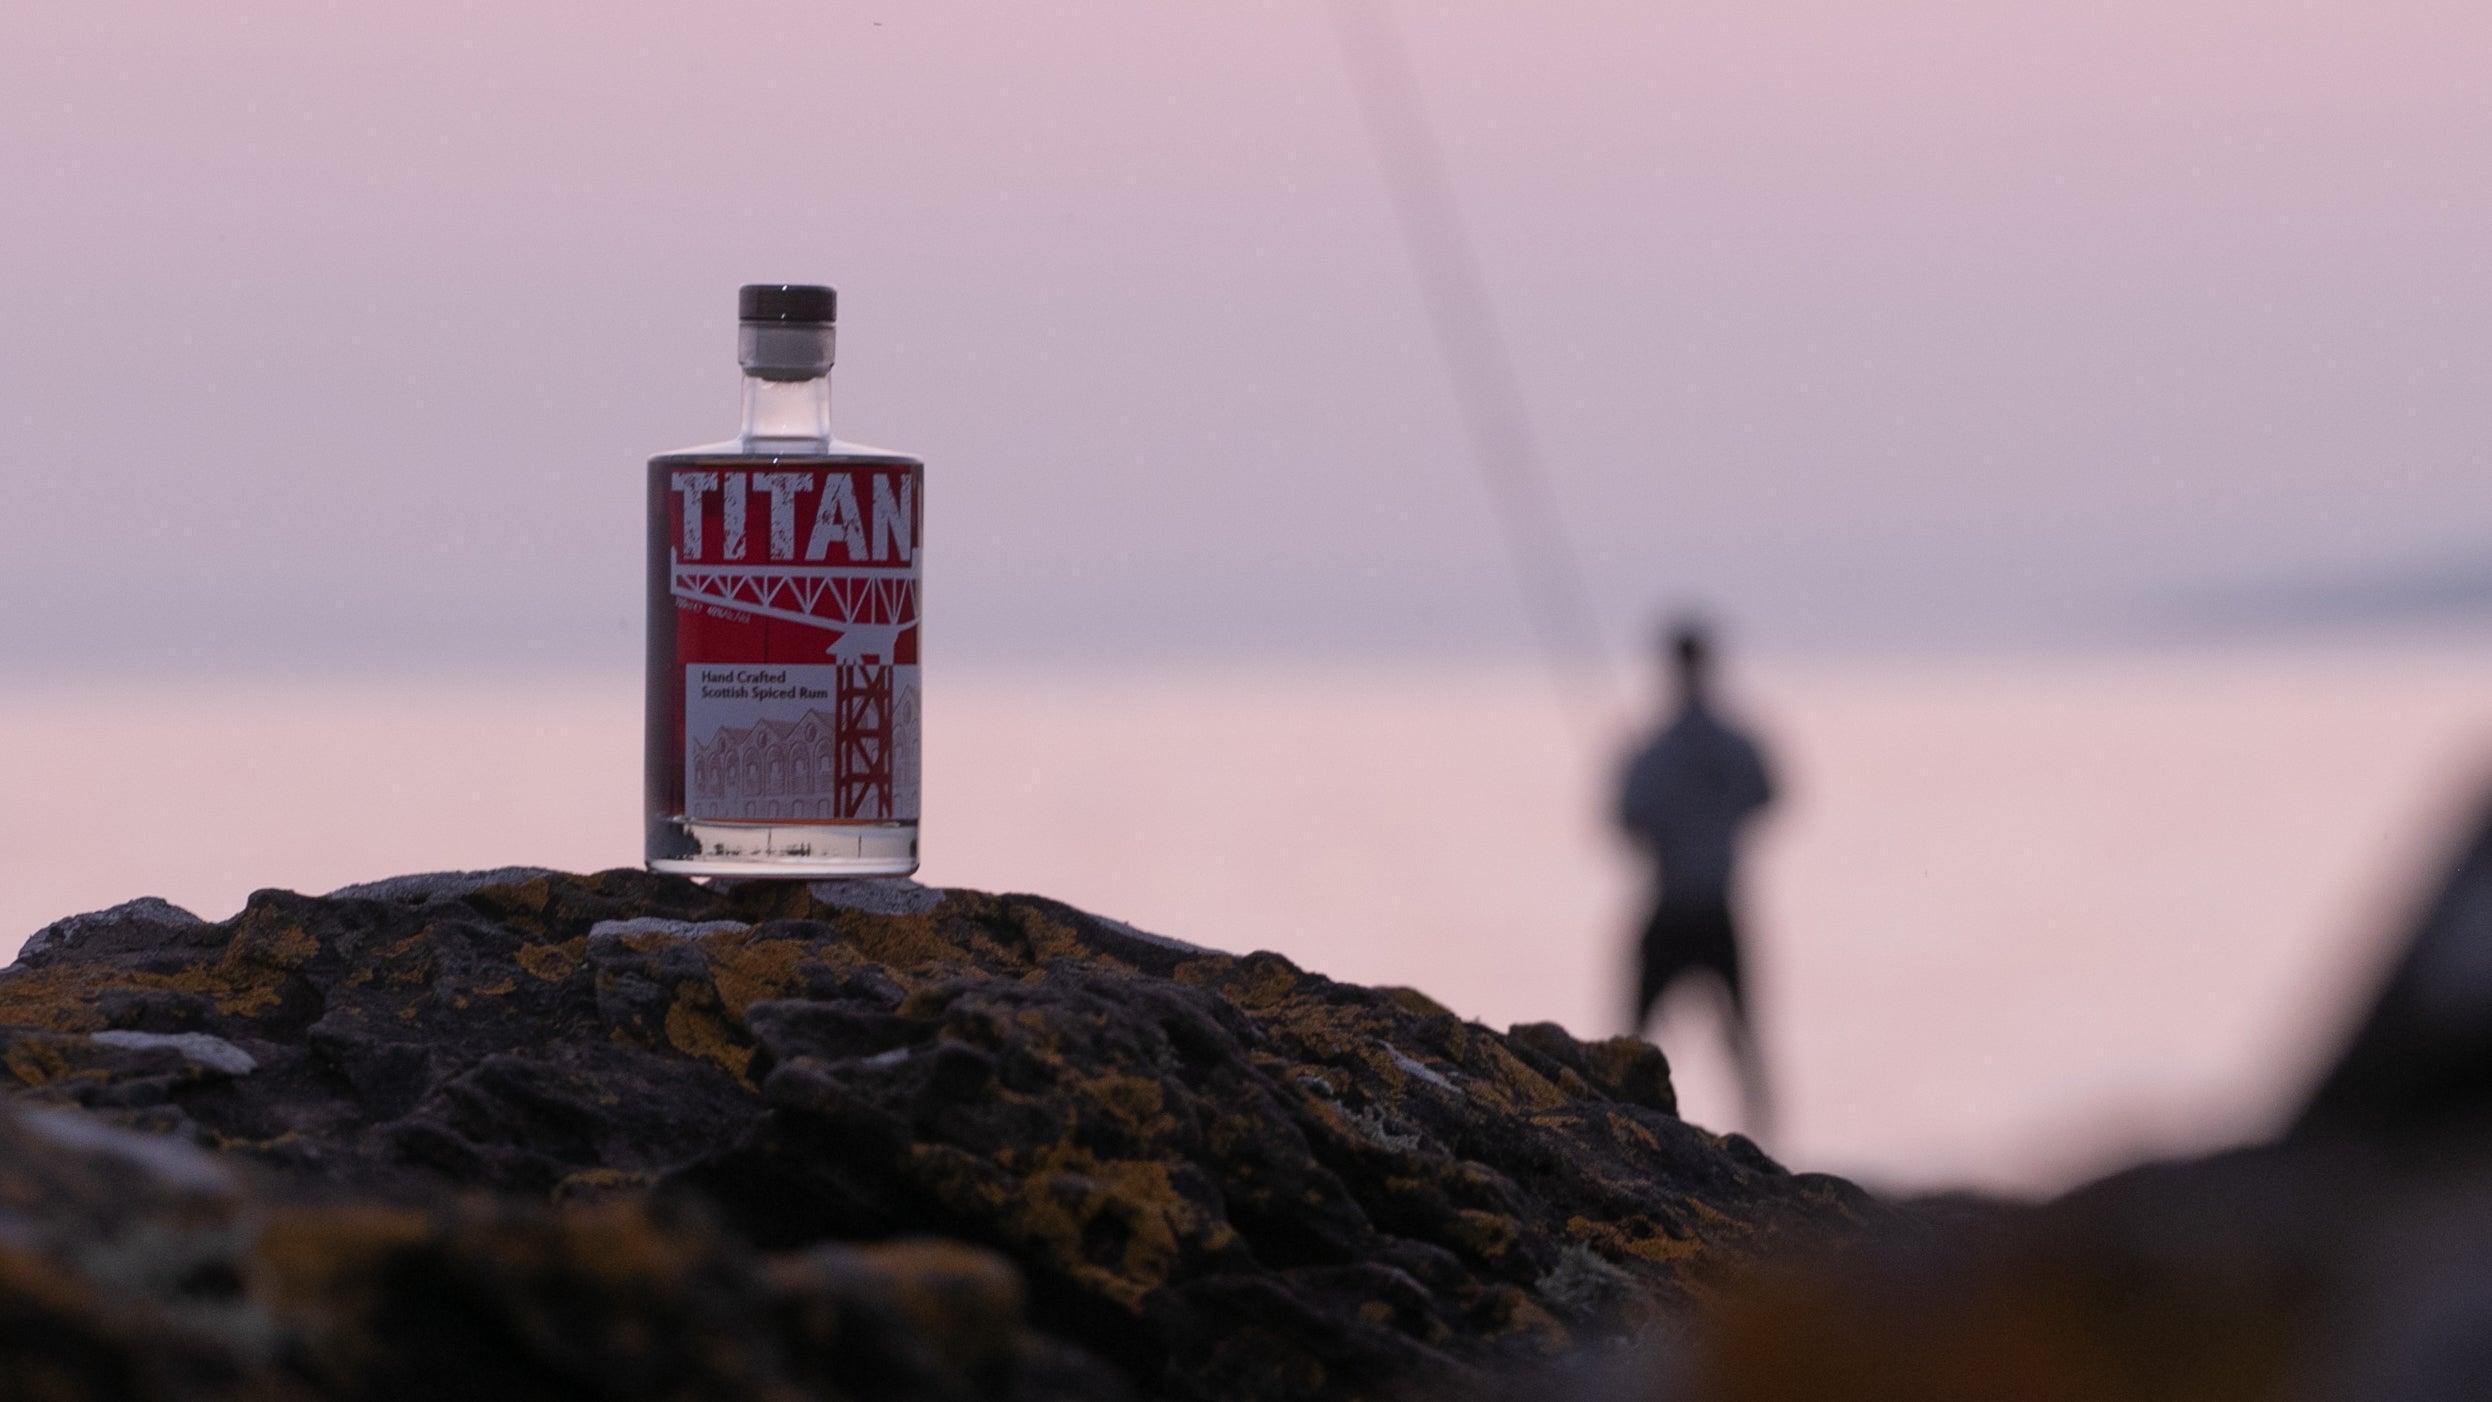 Titan Rum